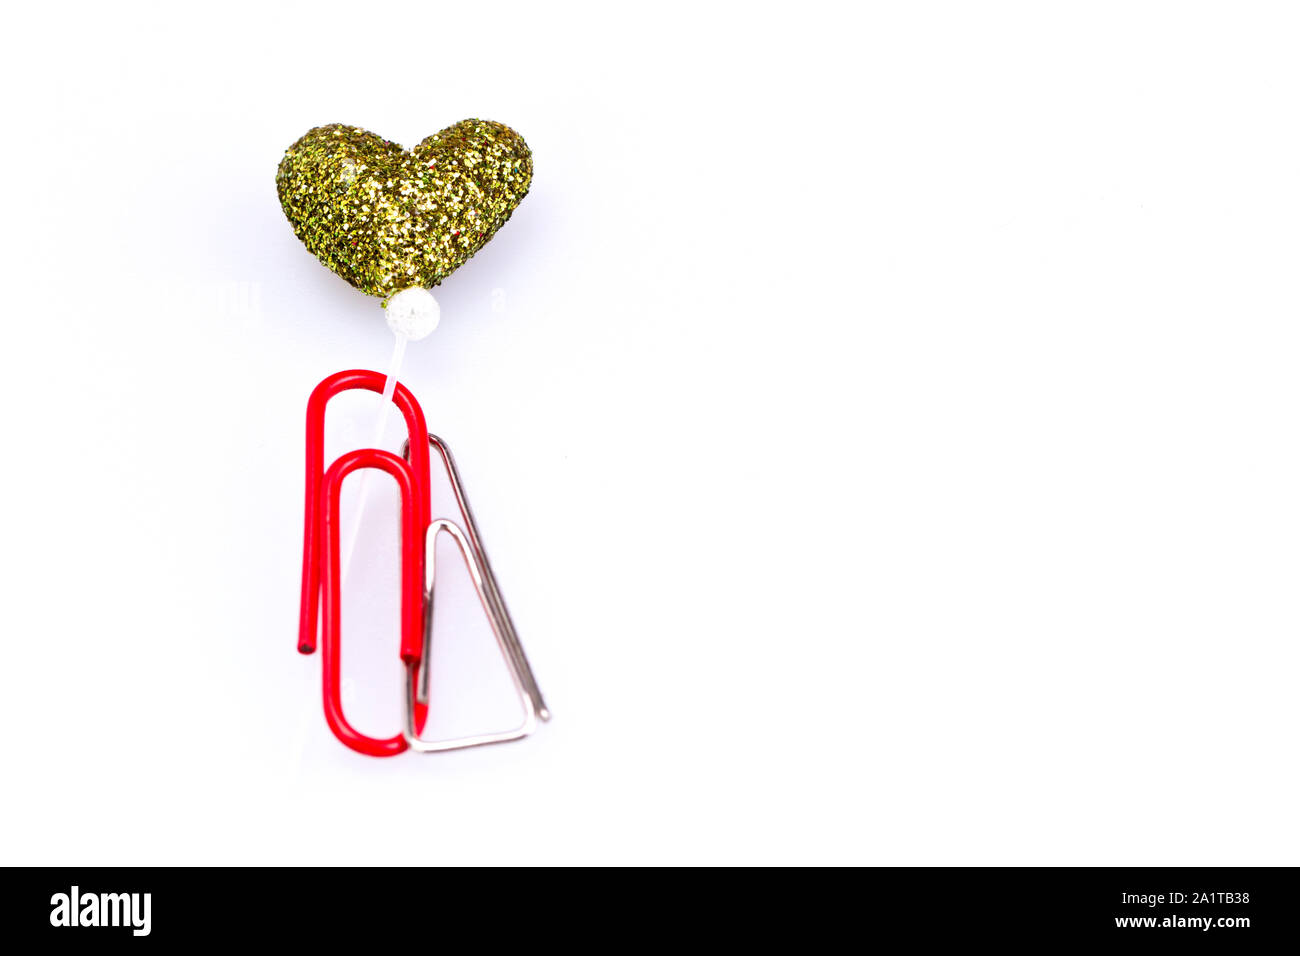 Metallo e plastica rosso paerclip insieme con amore simbolo su sfondo bianco con spazio di copia Foto Stock